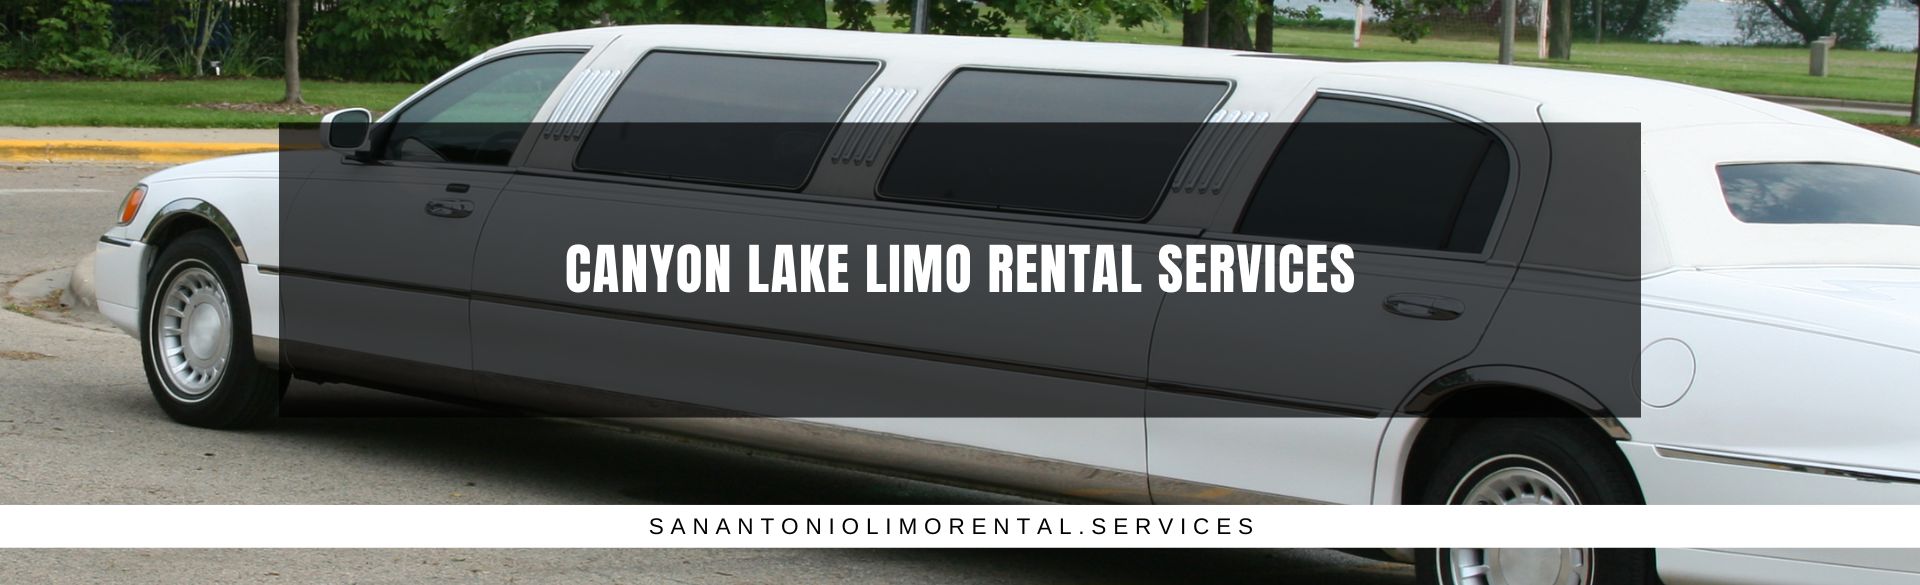 Canyon Lake Limo Rental Services